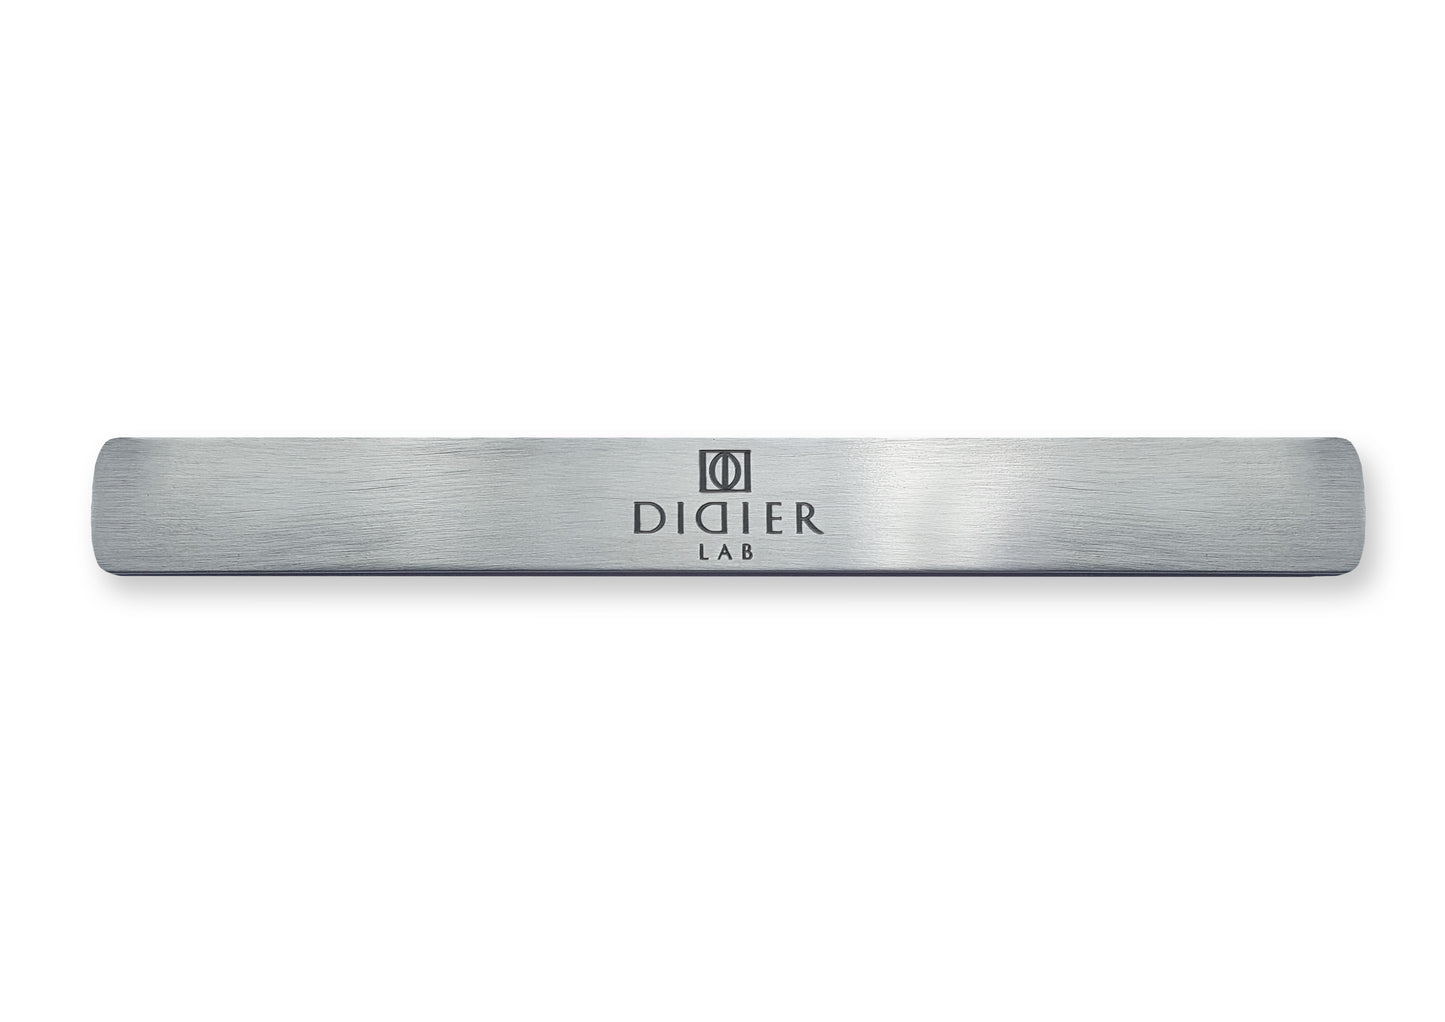 Metāla vītnes pamatne, Stainless steel nail file handle "Didier Lab",  135 x 1,5mm